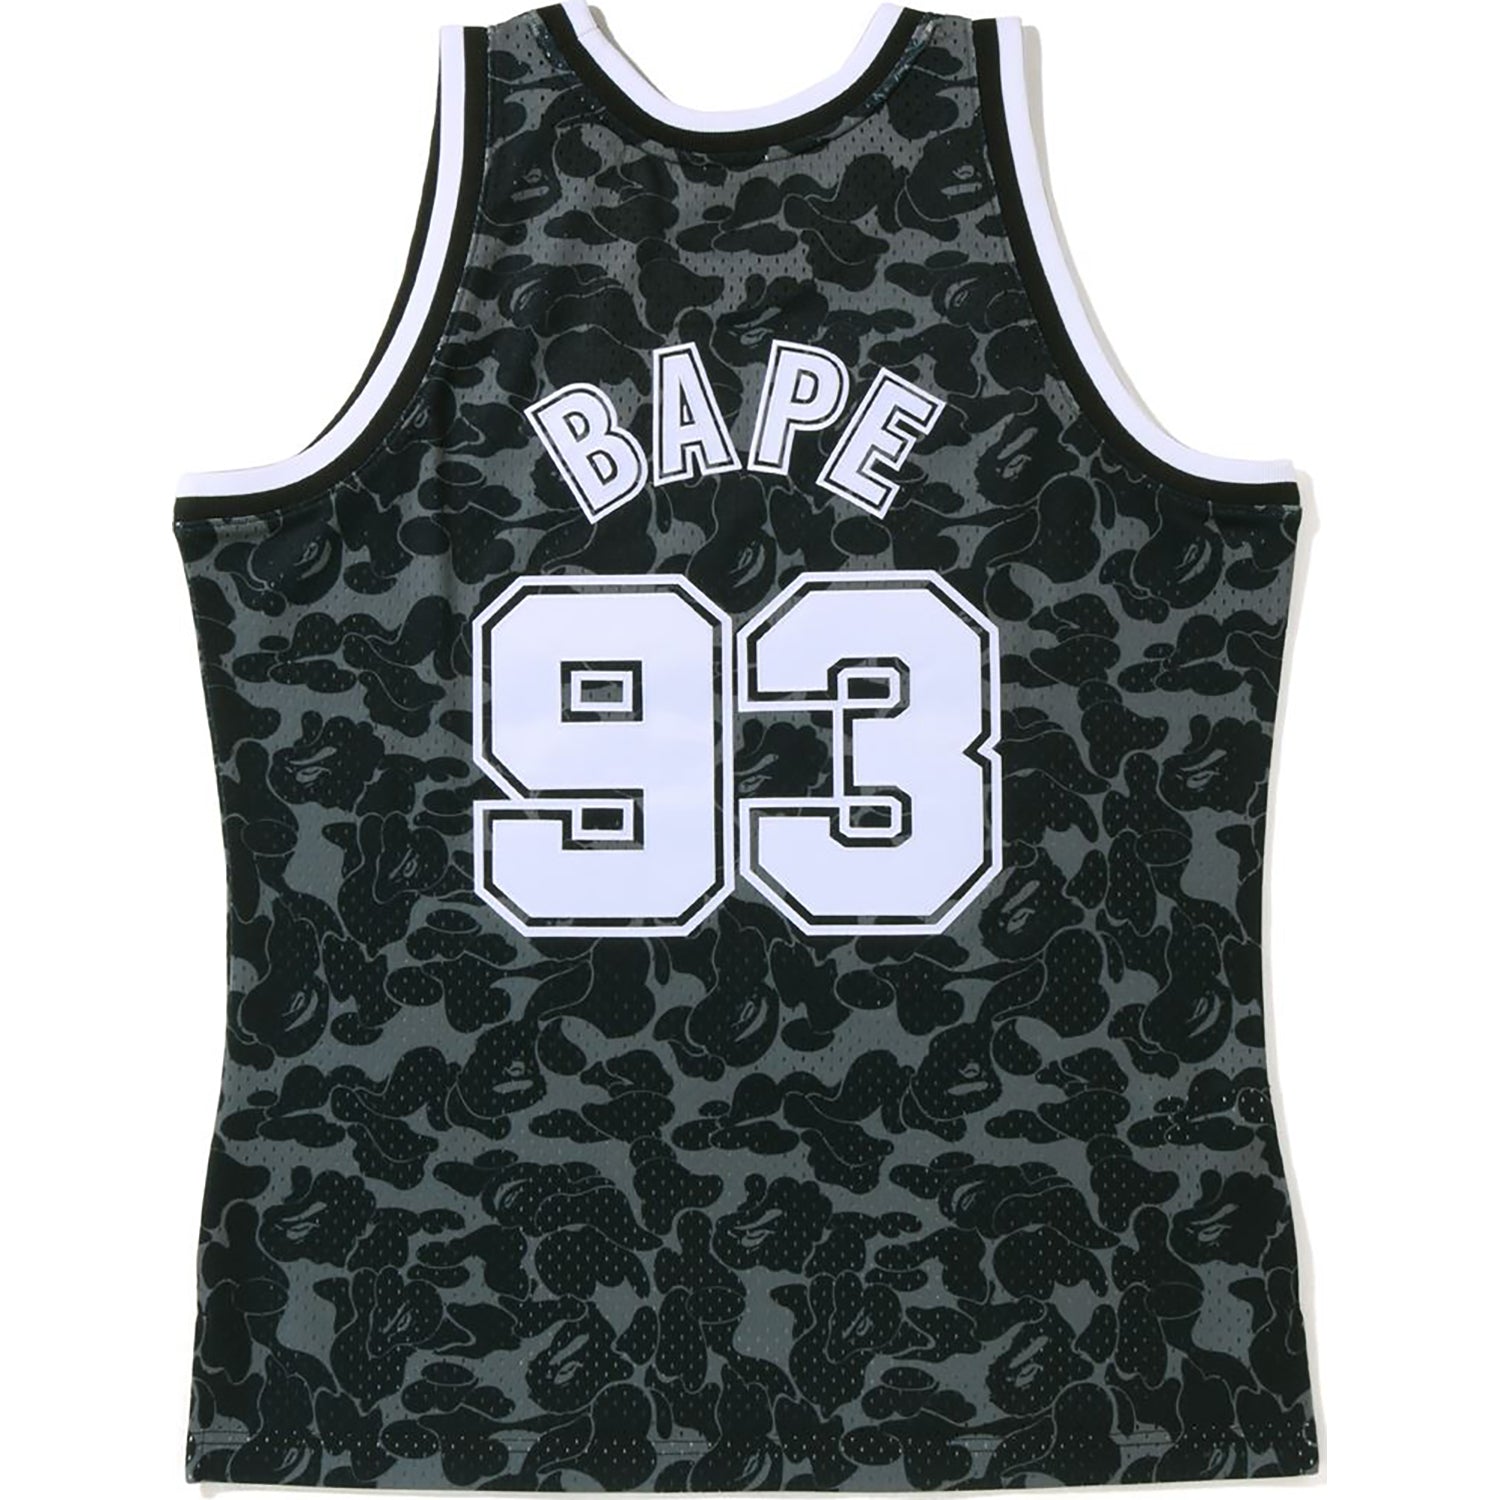 BAPE x Mitchell & Ness New Jersey Nets Shorts Black